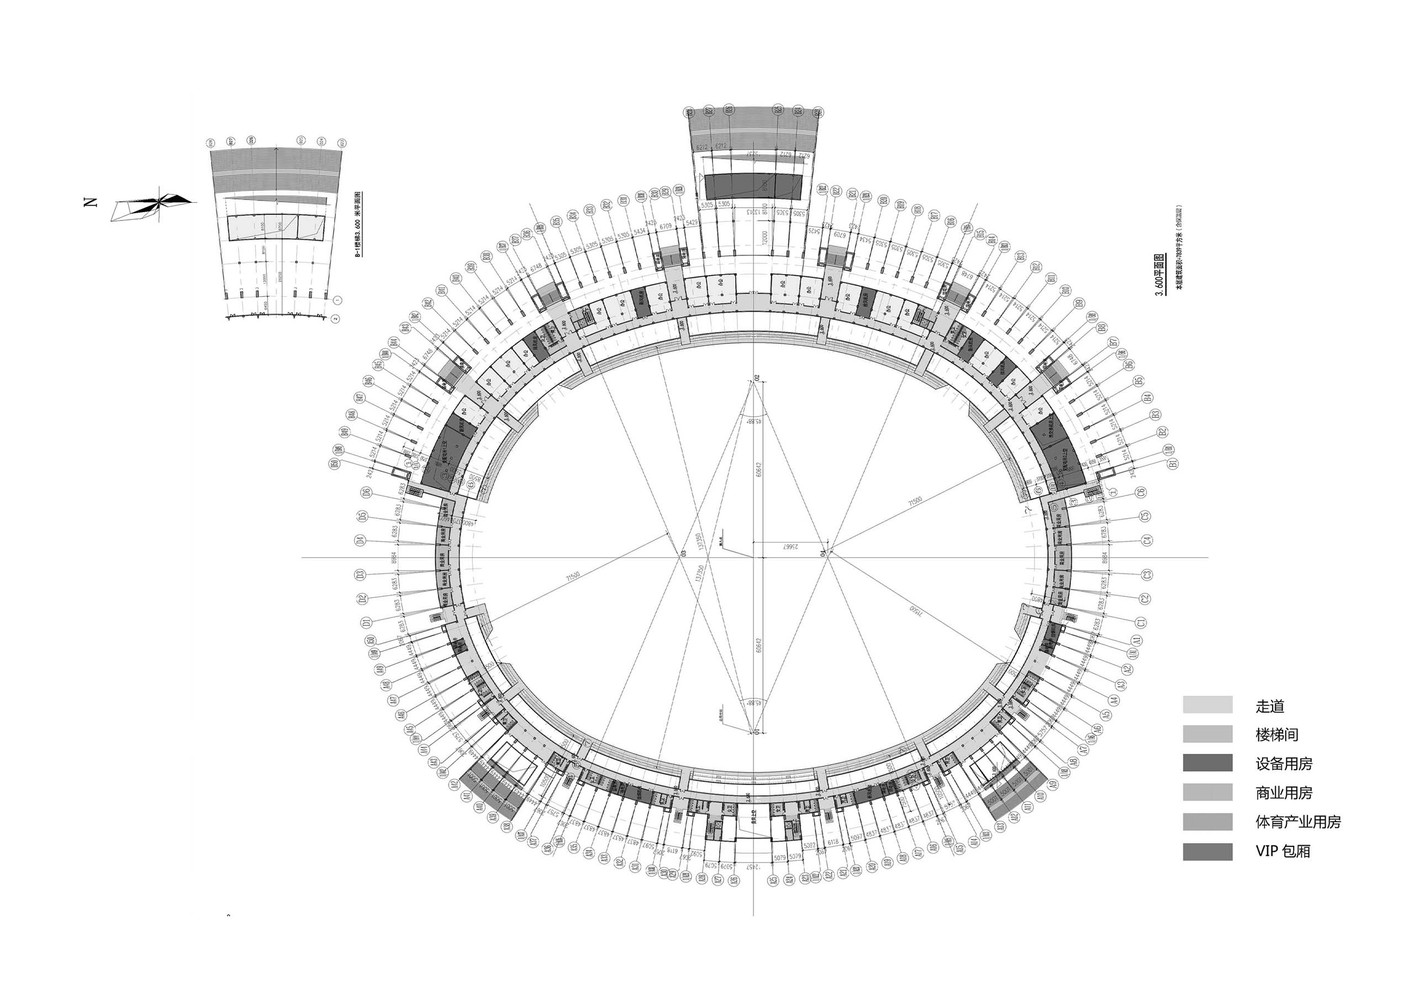 体育场二层平面图.jpg